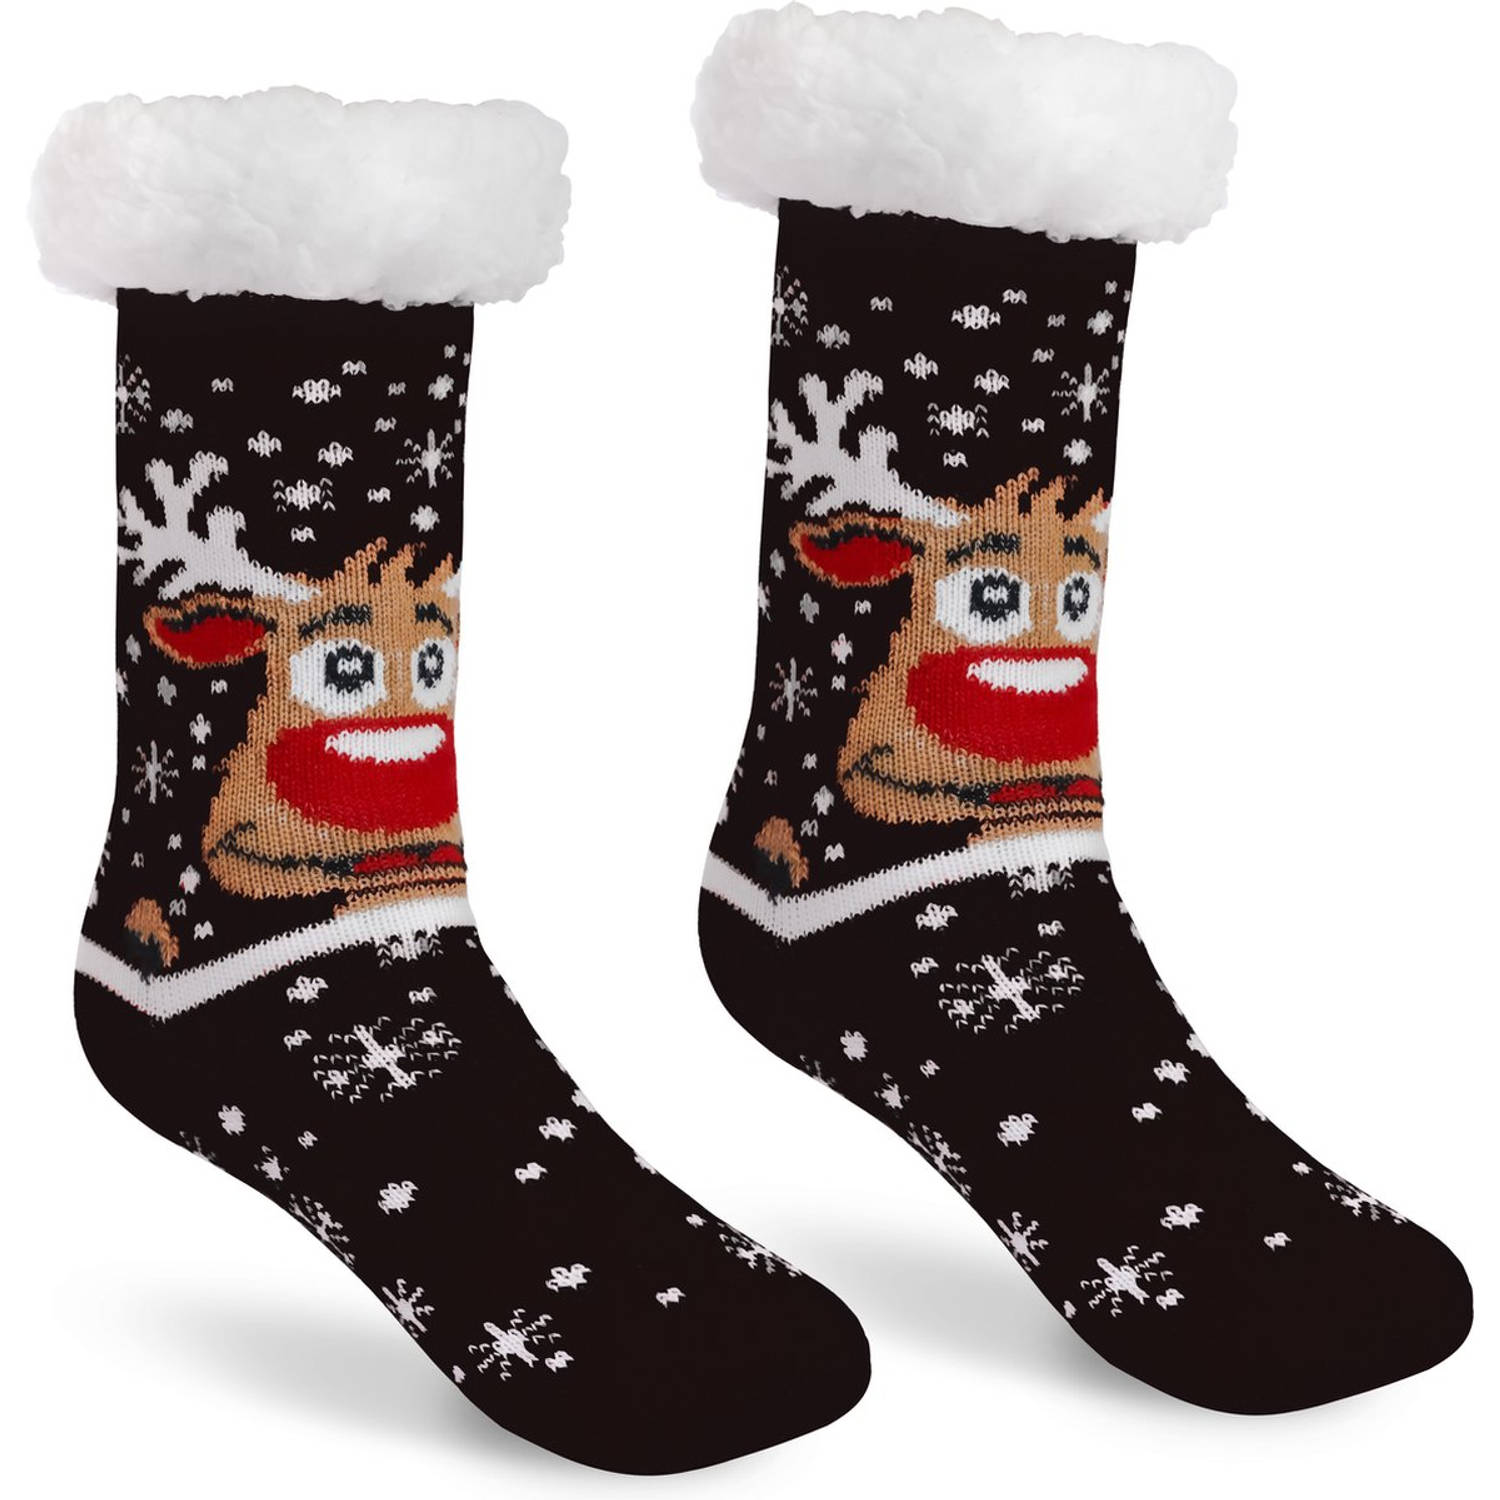 JAP Kerstsokken met anti slip - Rudolf het rendier huissokken - Warme, dikke en fluffy winter sokken - Dames en heren bedsokken - Maat 30-35